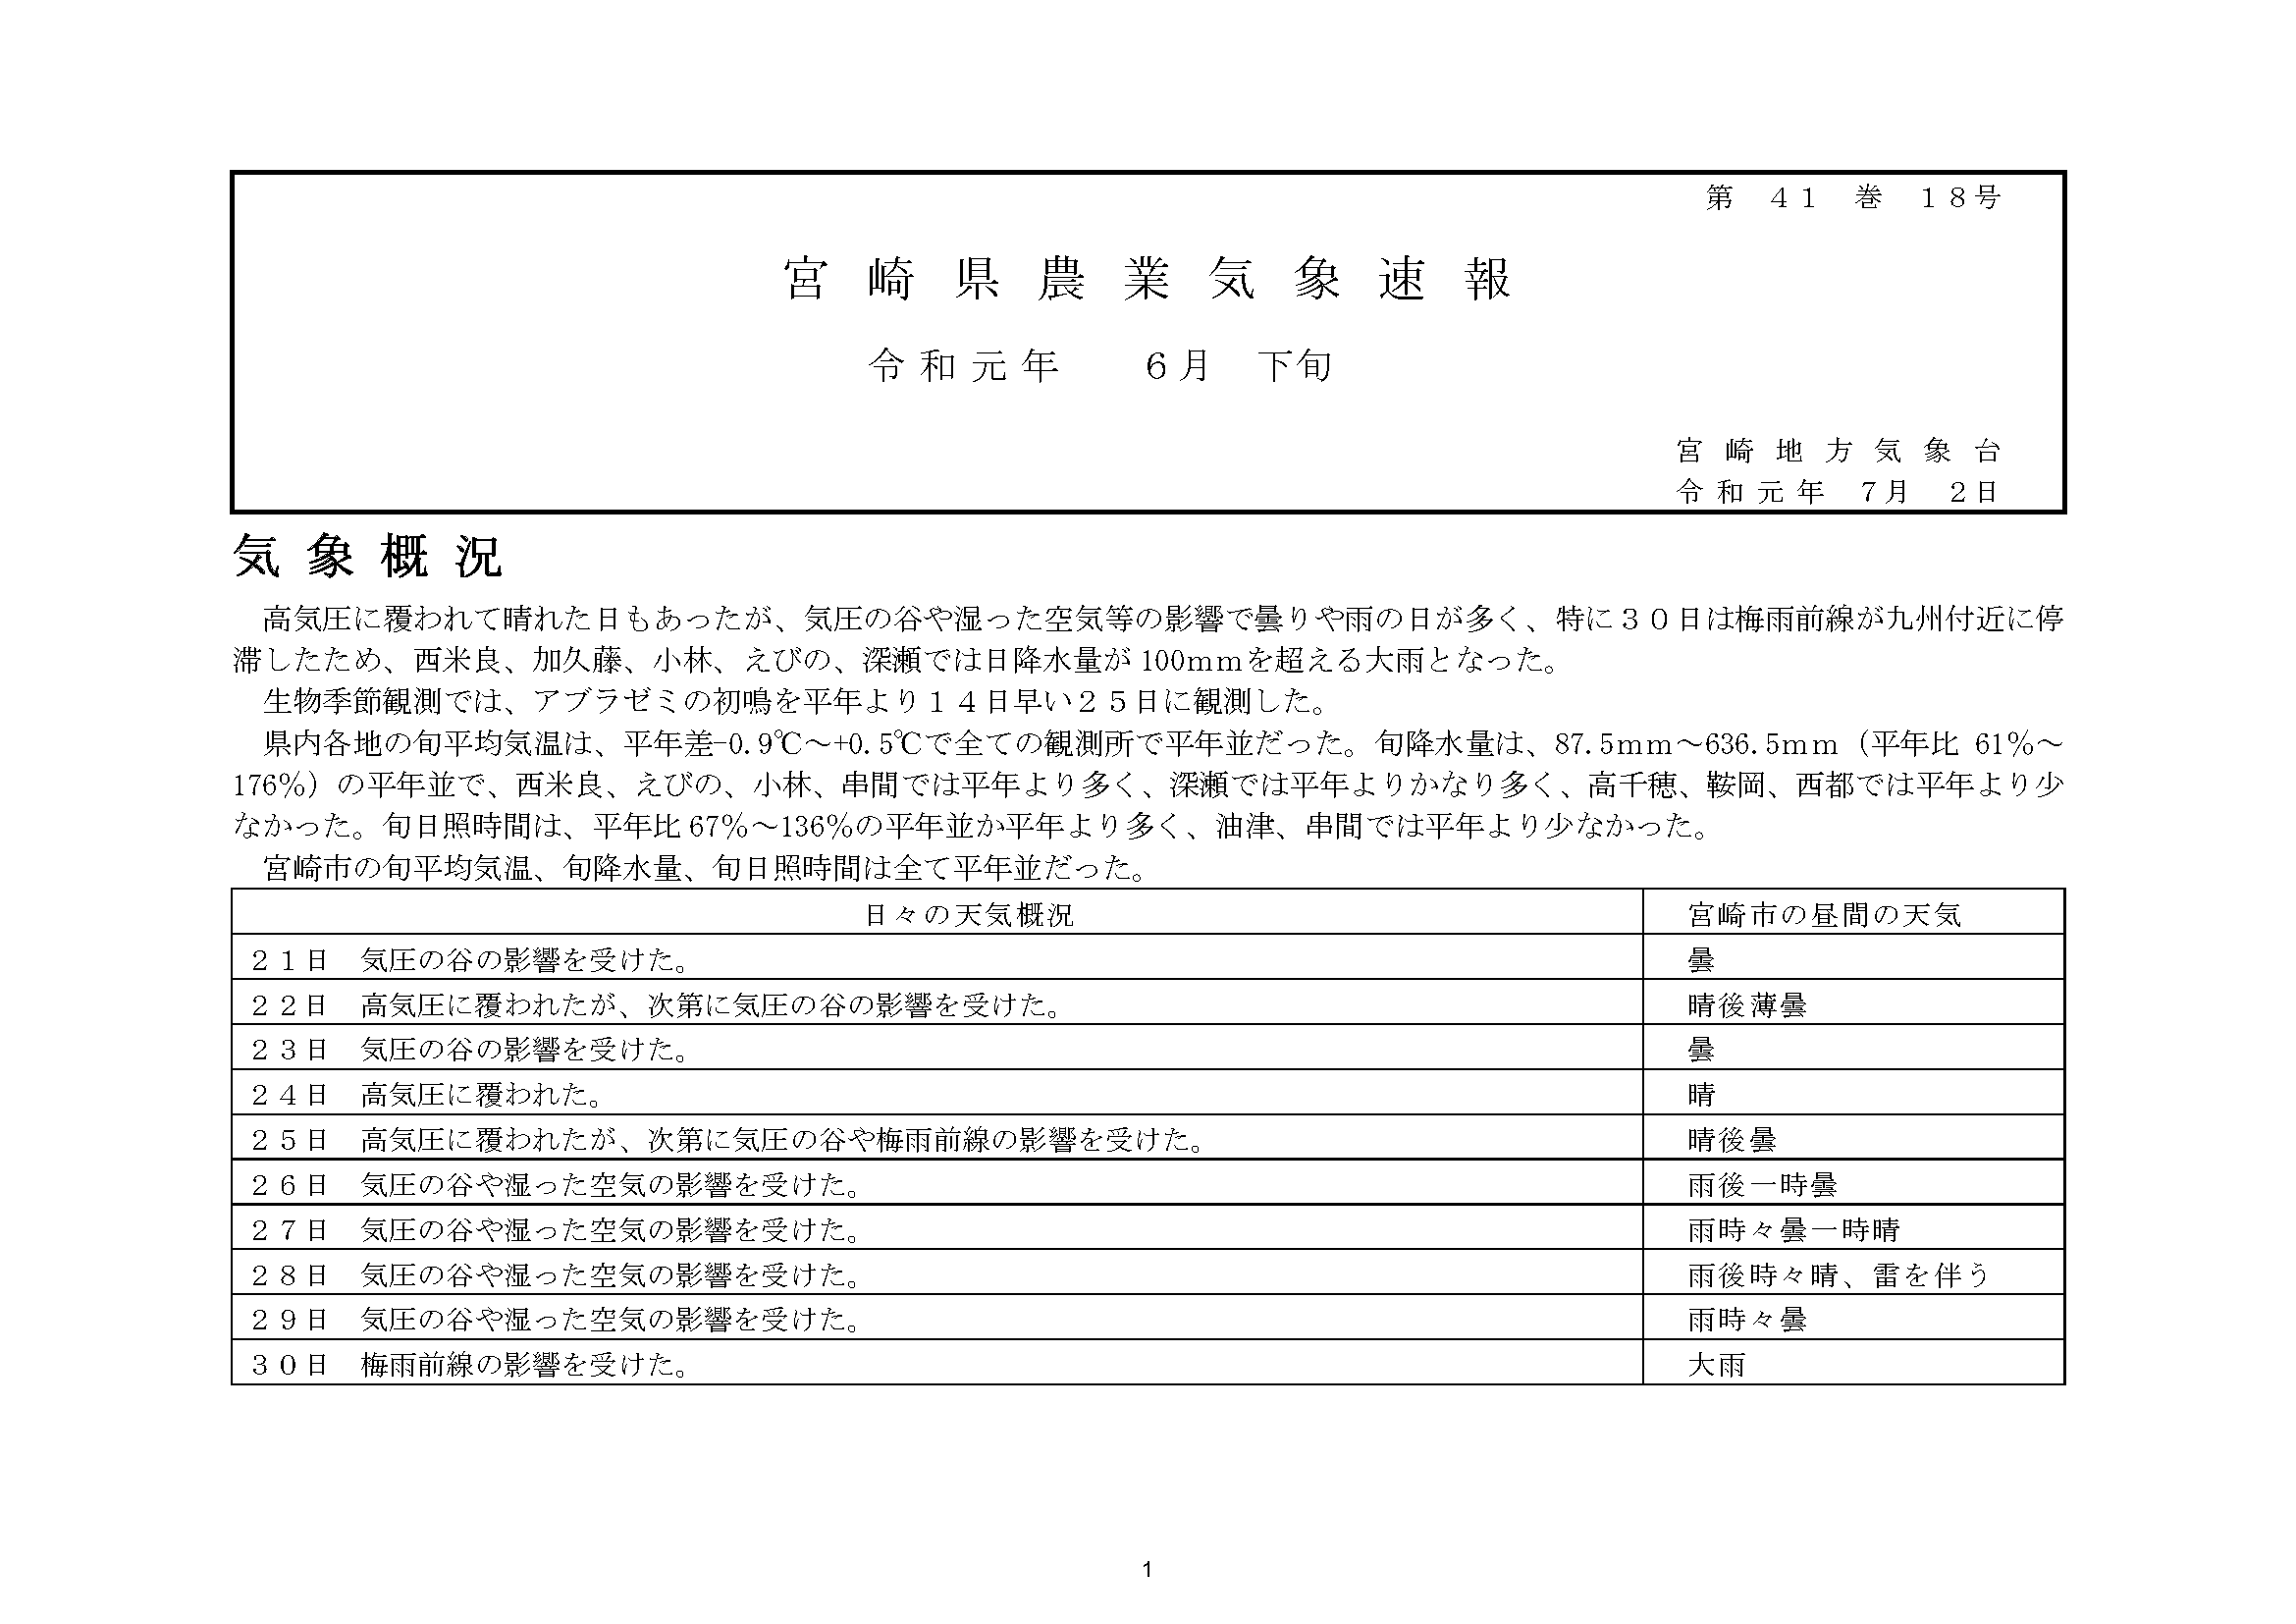 宮崎県農業気象速報平成31年6月下旬PDF